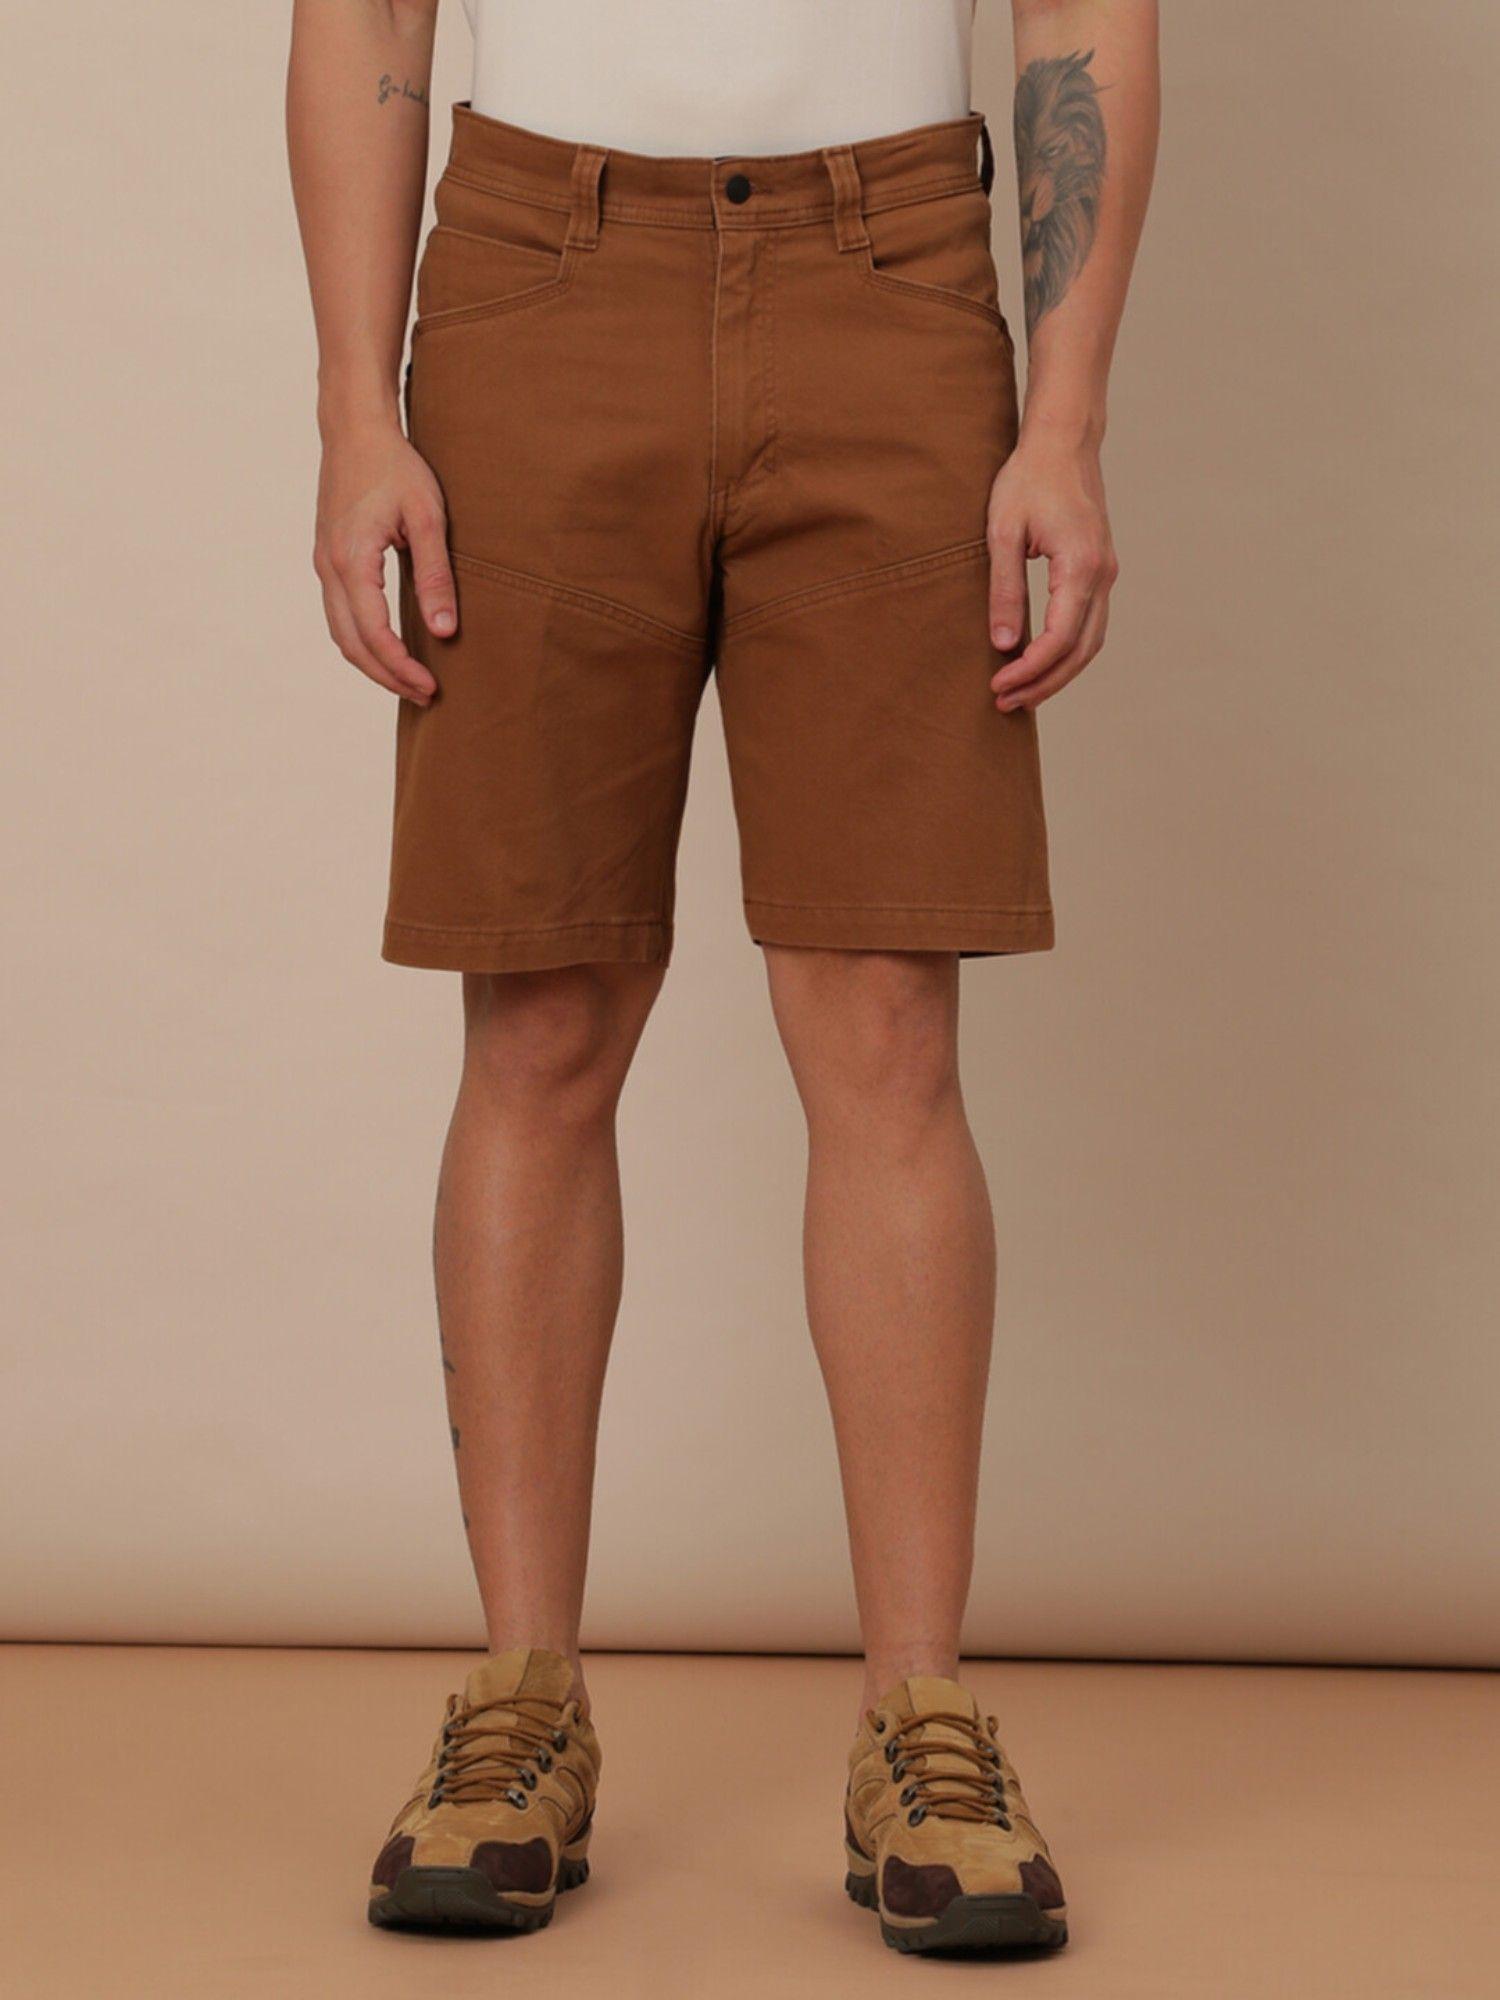 mens-brown-shorts-regular-fit